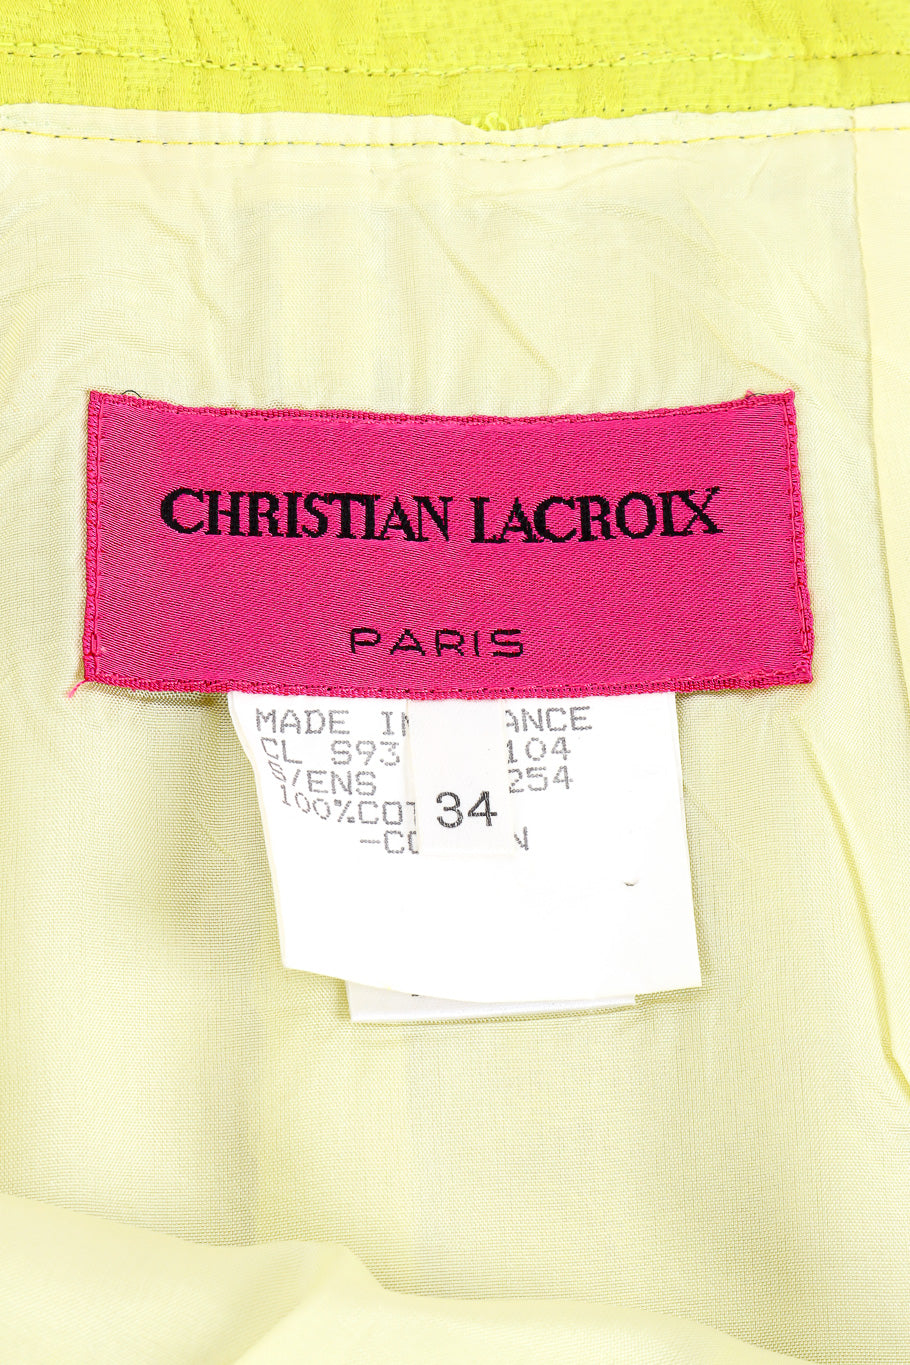 Vintage Christian Lacroix Appliqué Peplum Jacket & Skirt Set skirt label closeup @Recessla